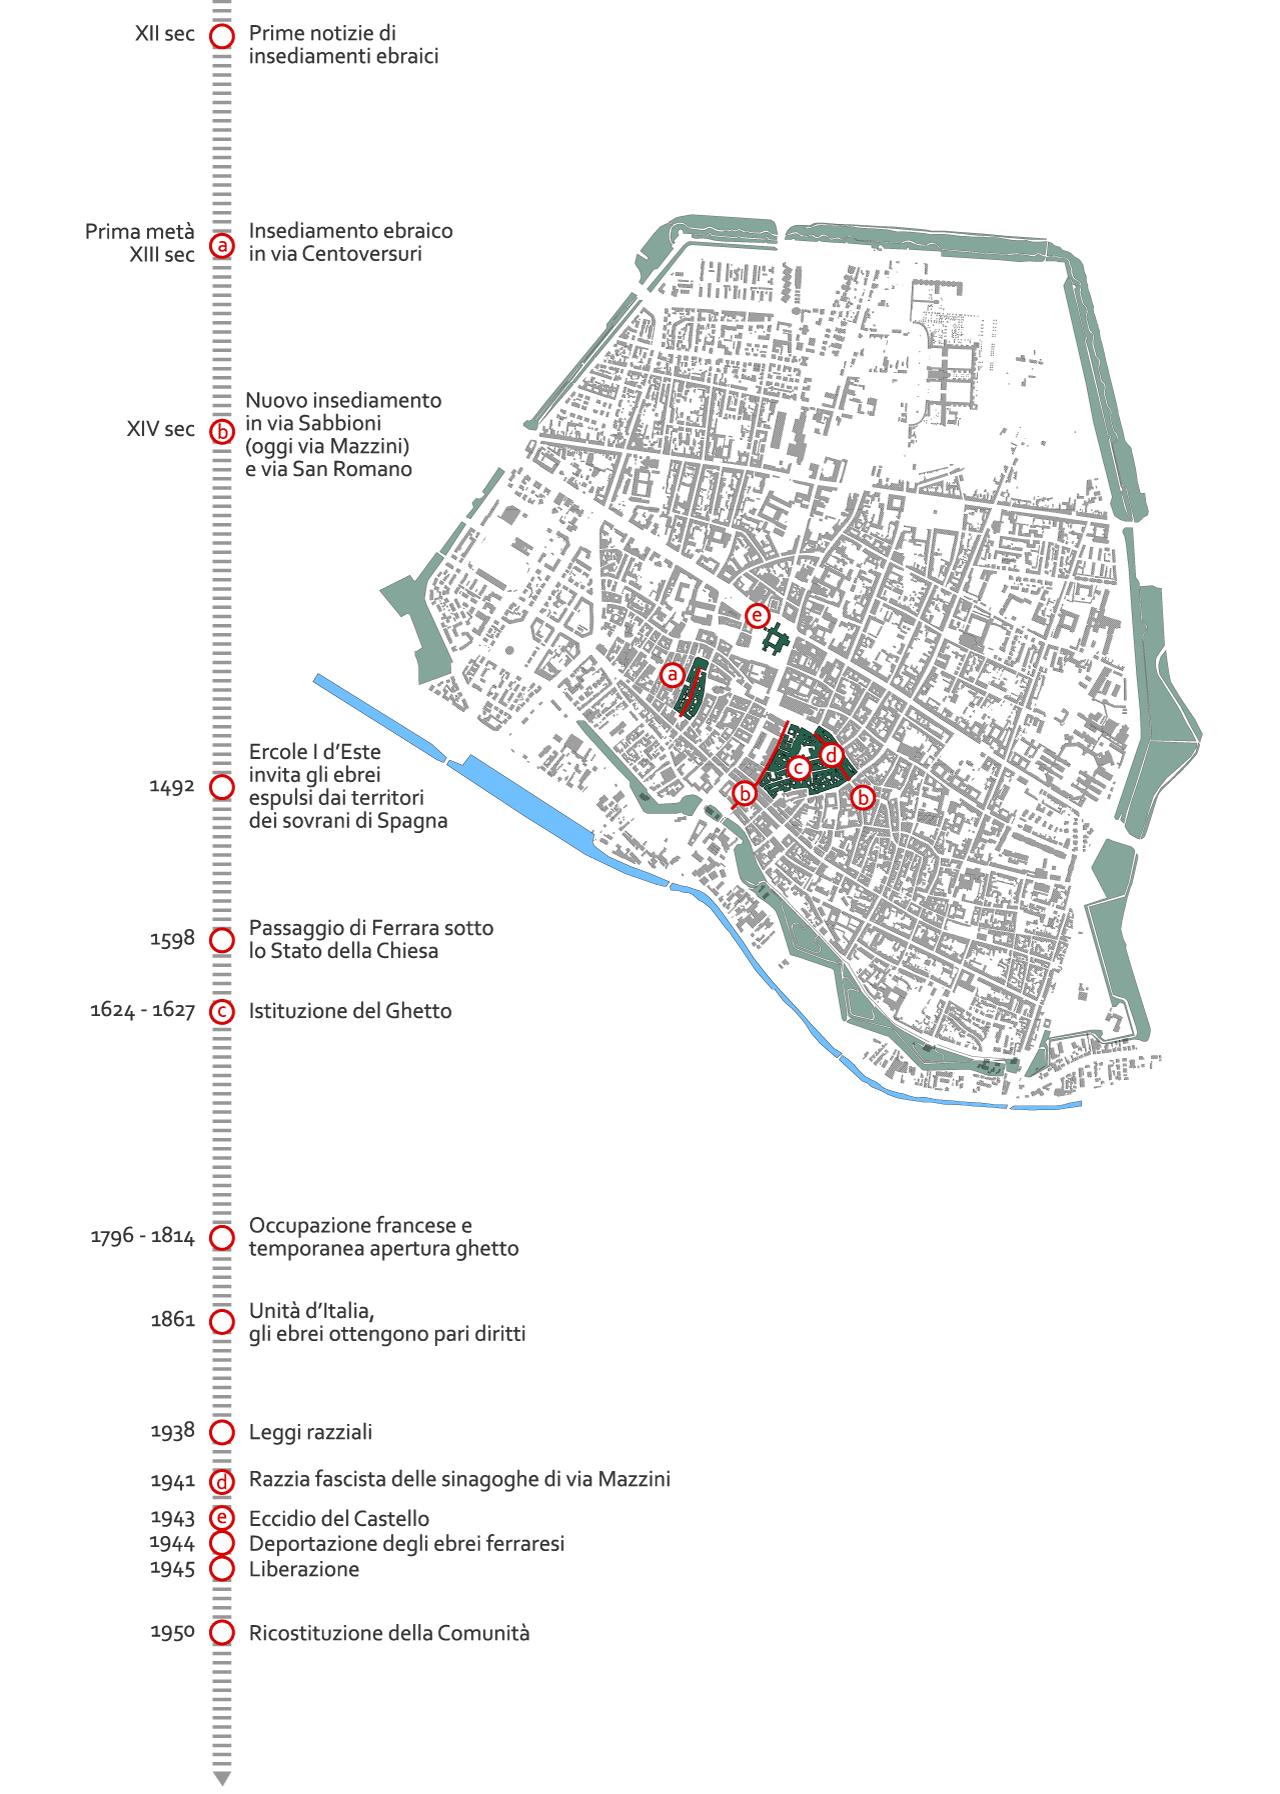 Mappa di Ferrara e principali eventi